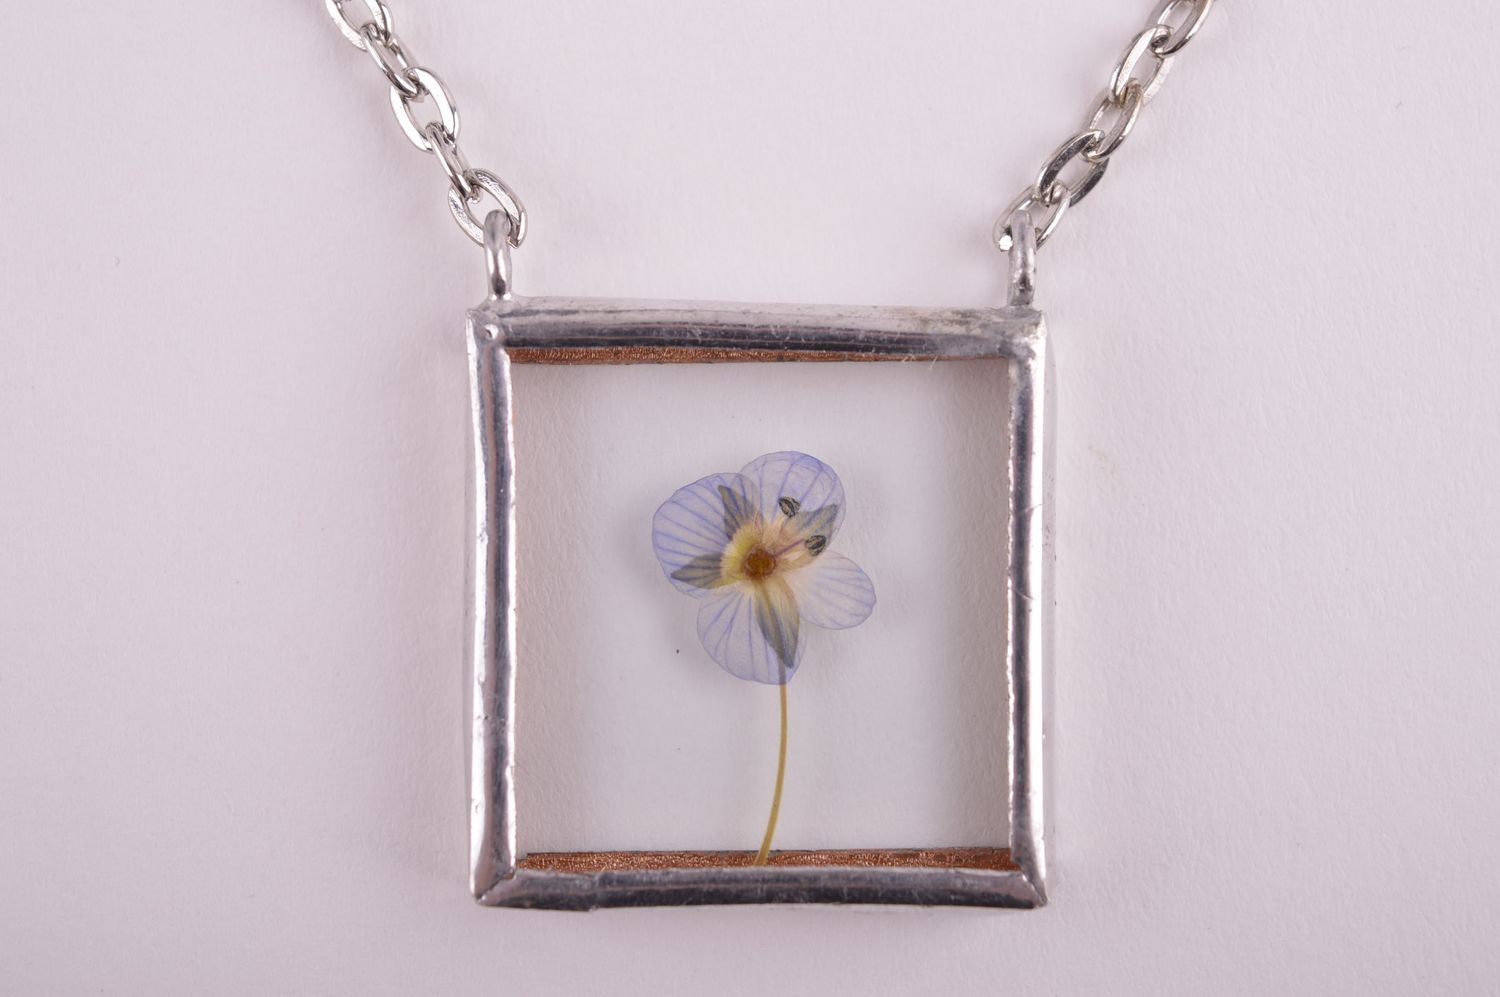 Beautiful handmade glass pendant artisan jewelry glass art ideas small gifts photo 4